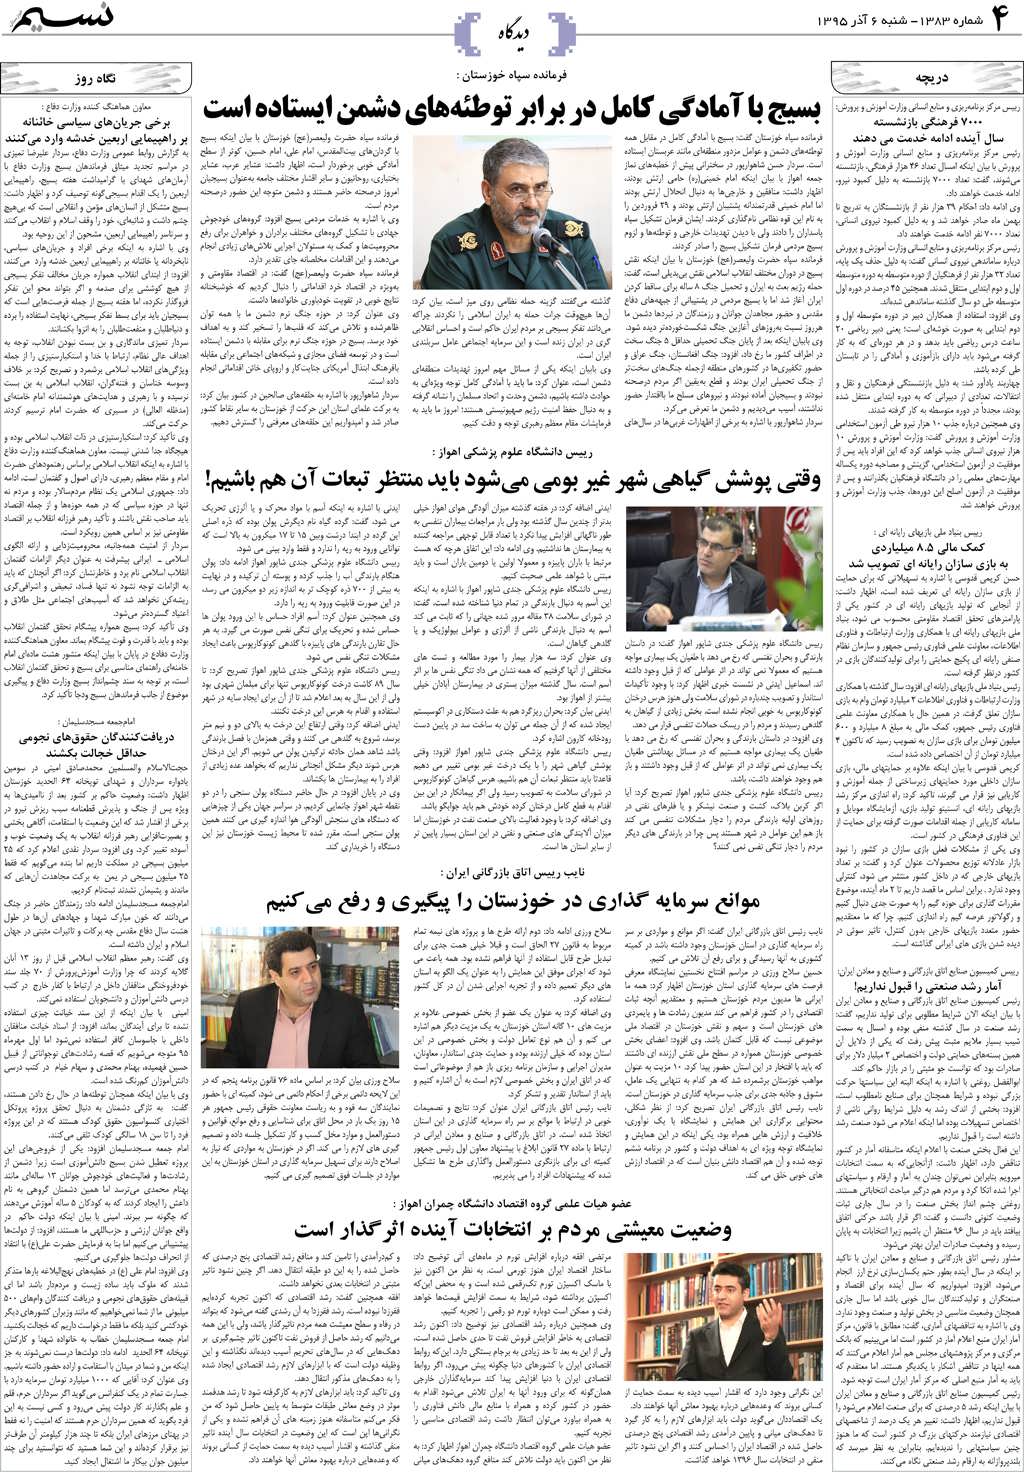 صفحه دیدگاه روزنامه نسیم شماره 1383